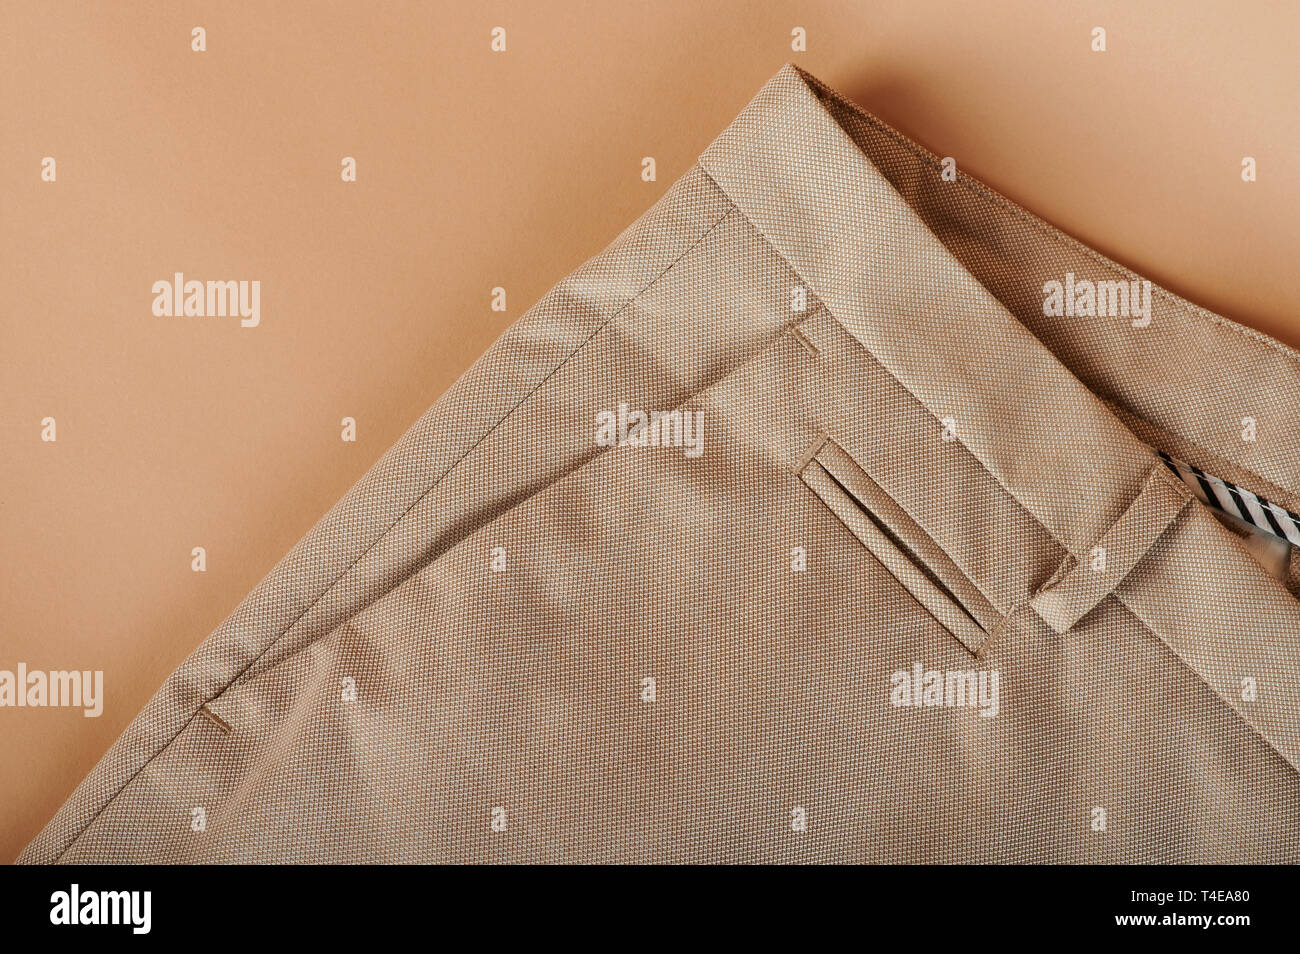 Cierre de pantalón clásico pocket sobre fondo de color beige. Foto de stock